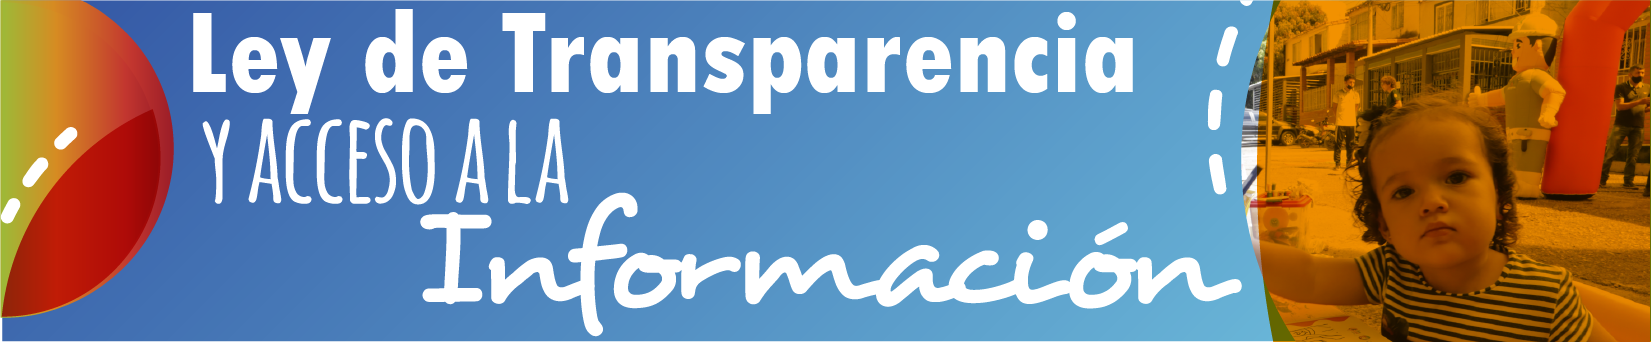 Banner de la Ley de transparencia y acceso a la Información